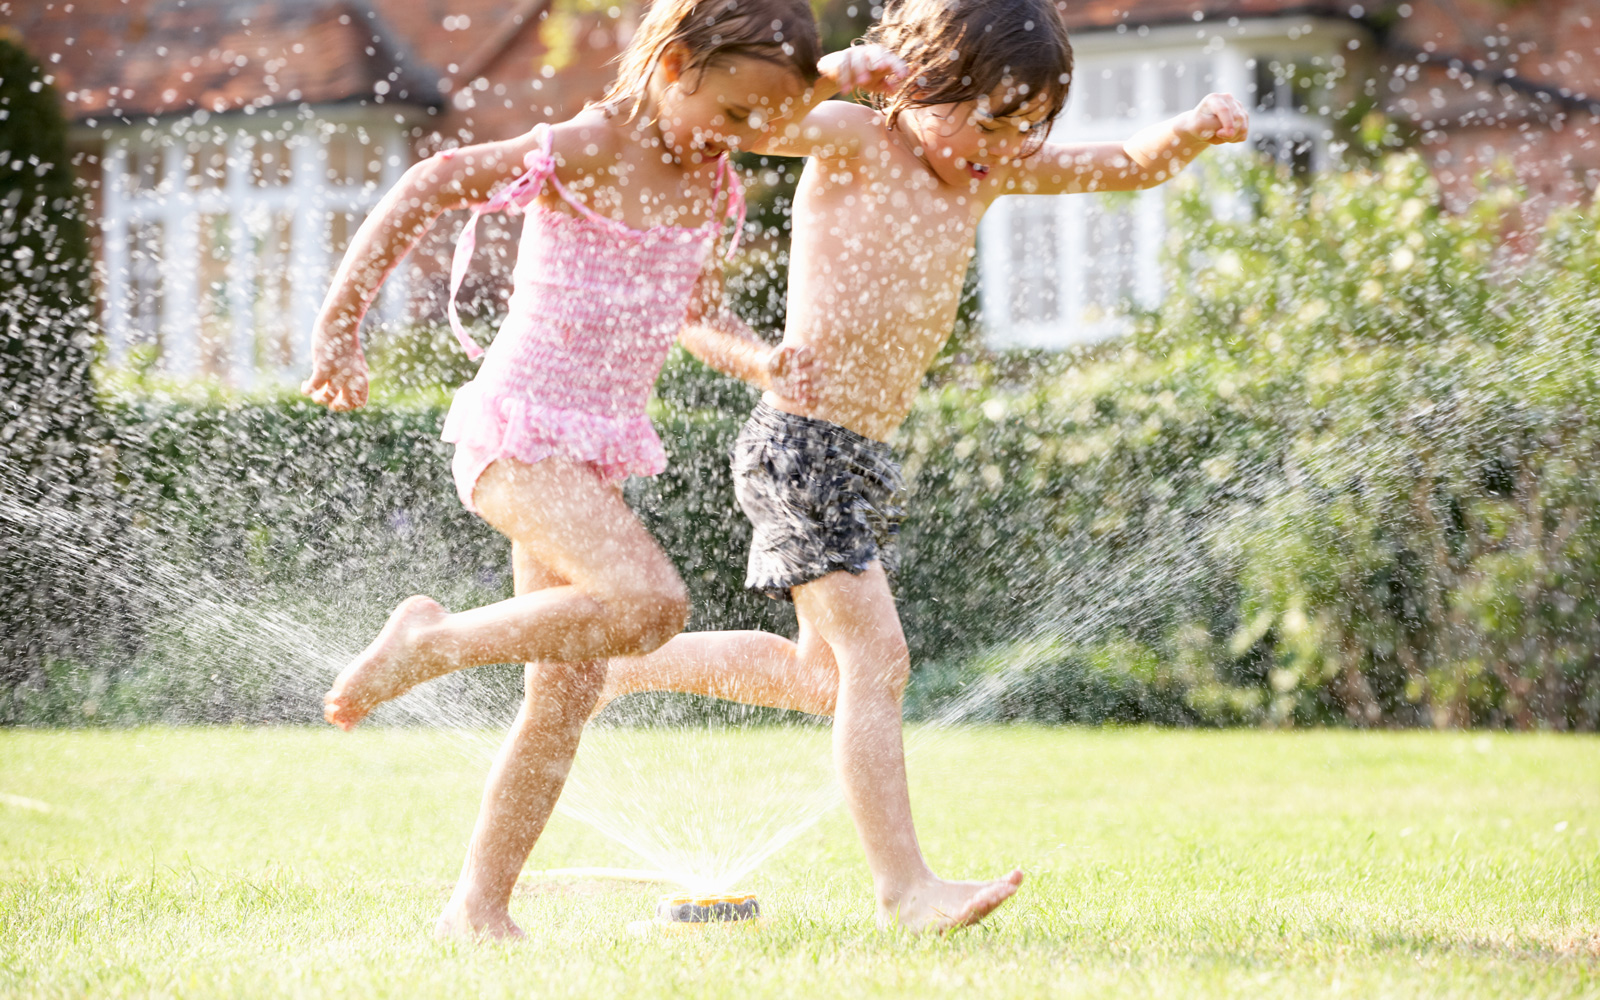 Children run through a sprinkler